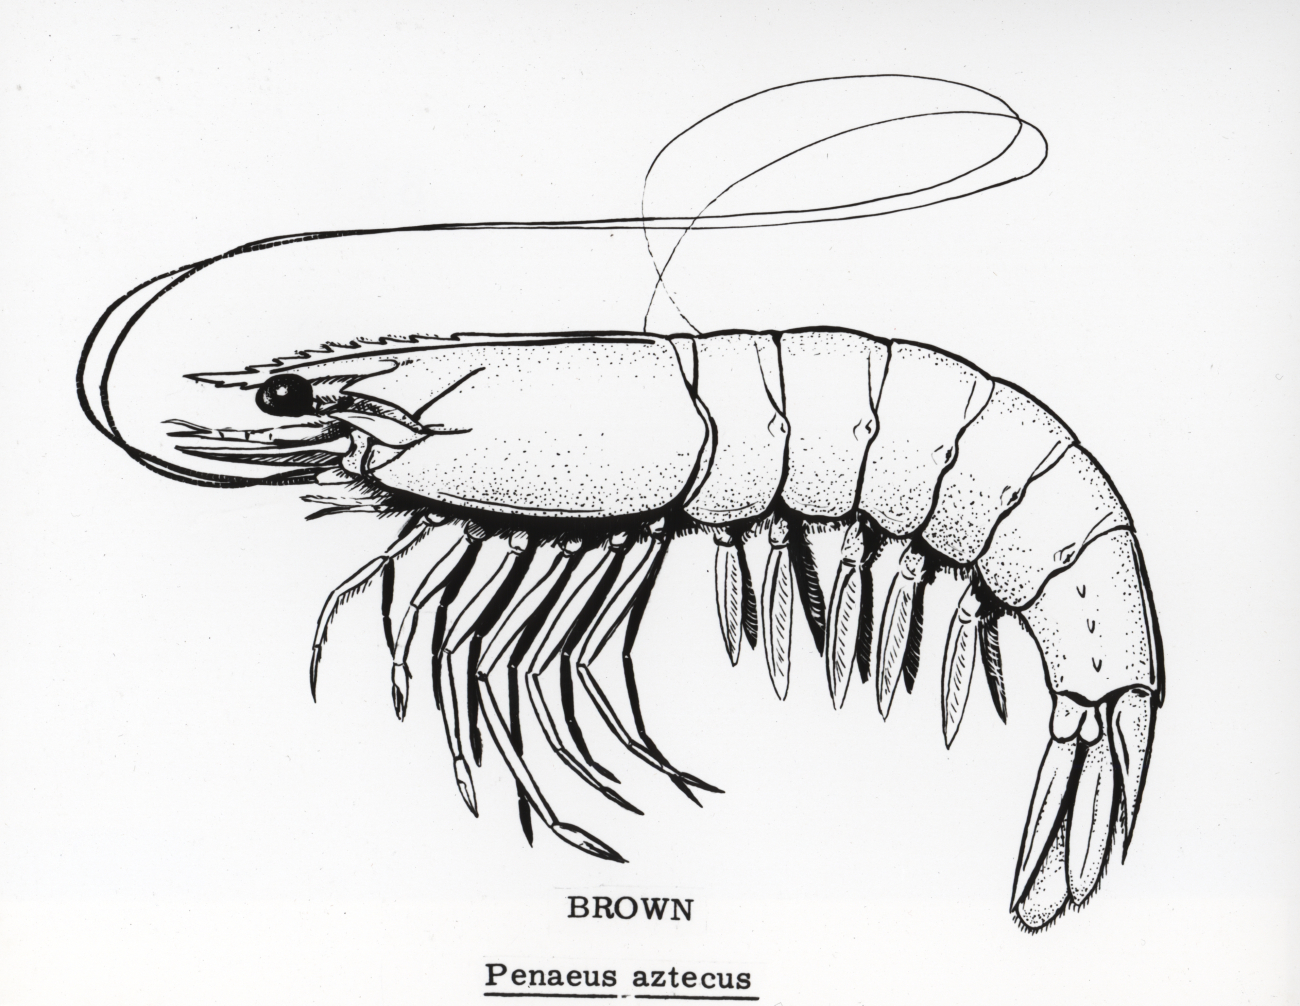 Brown shrimp drawing (Penaeus azteca)